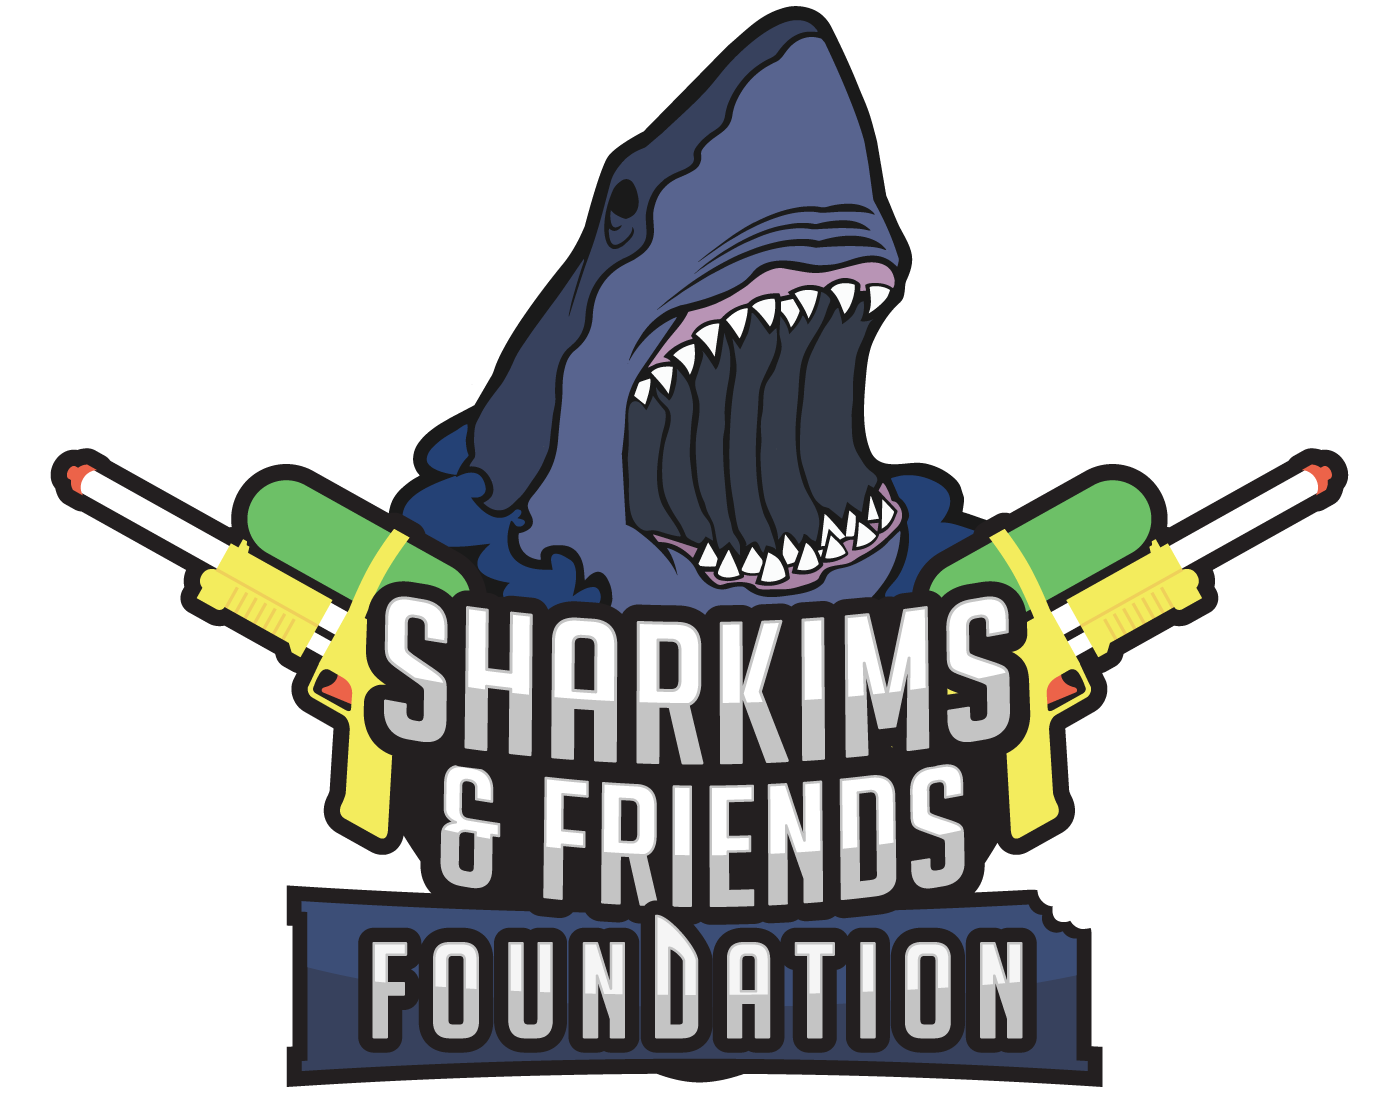 Sharkims & Friends Foundation